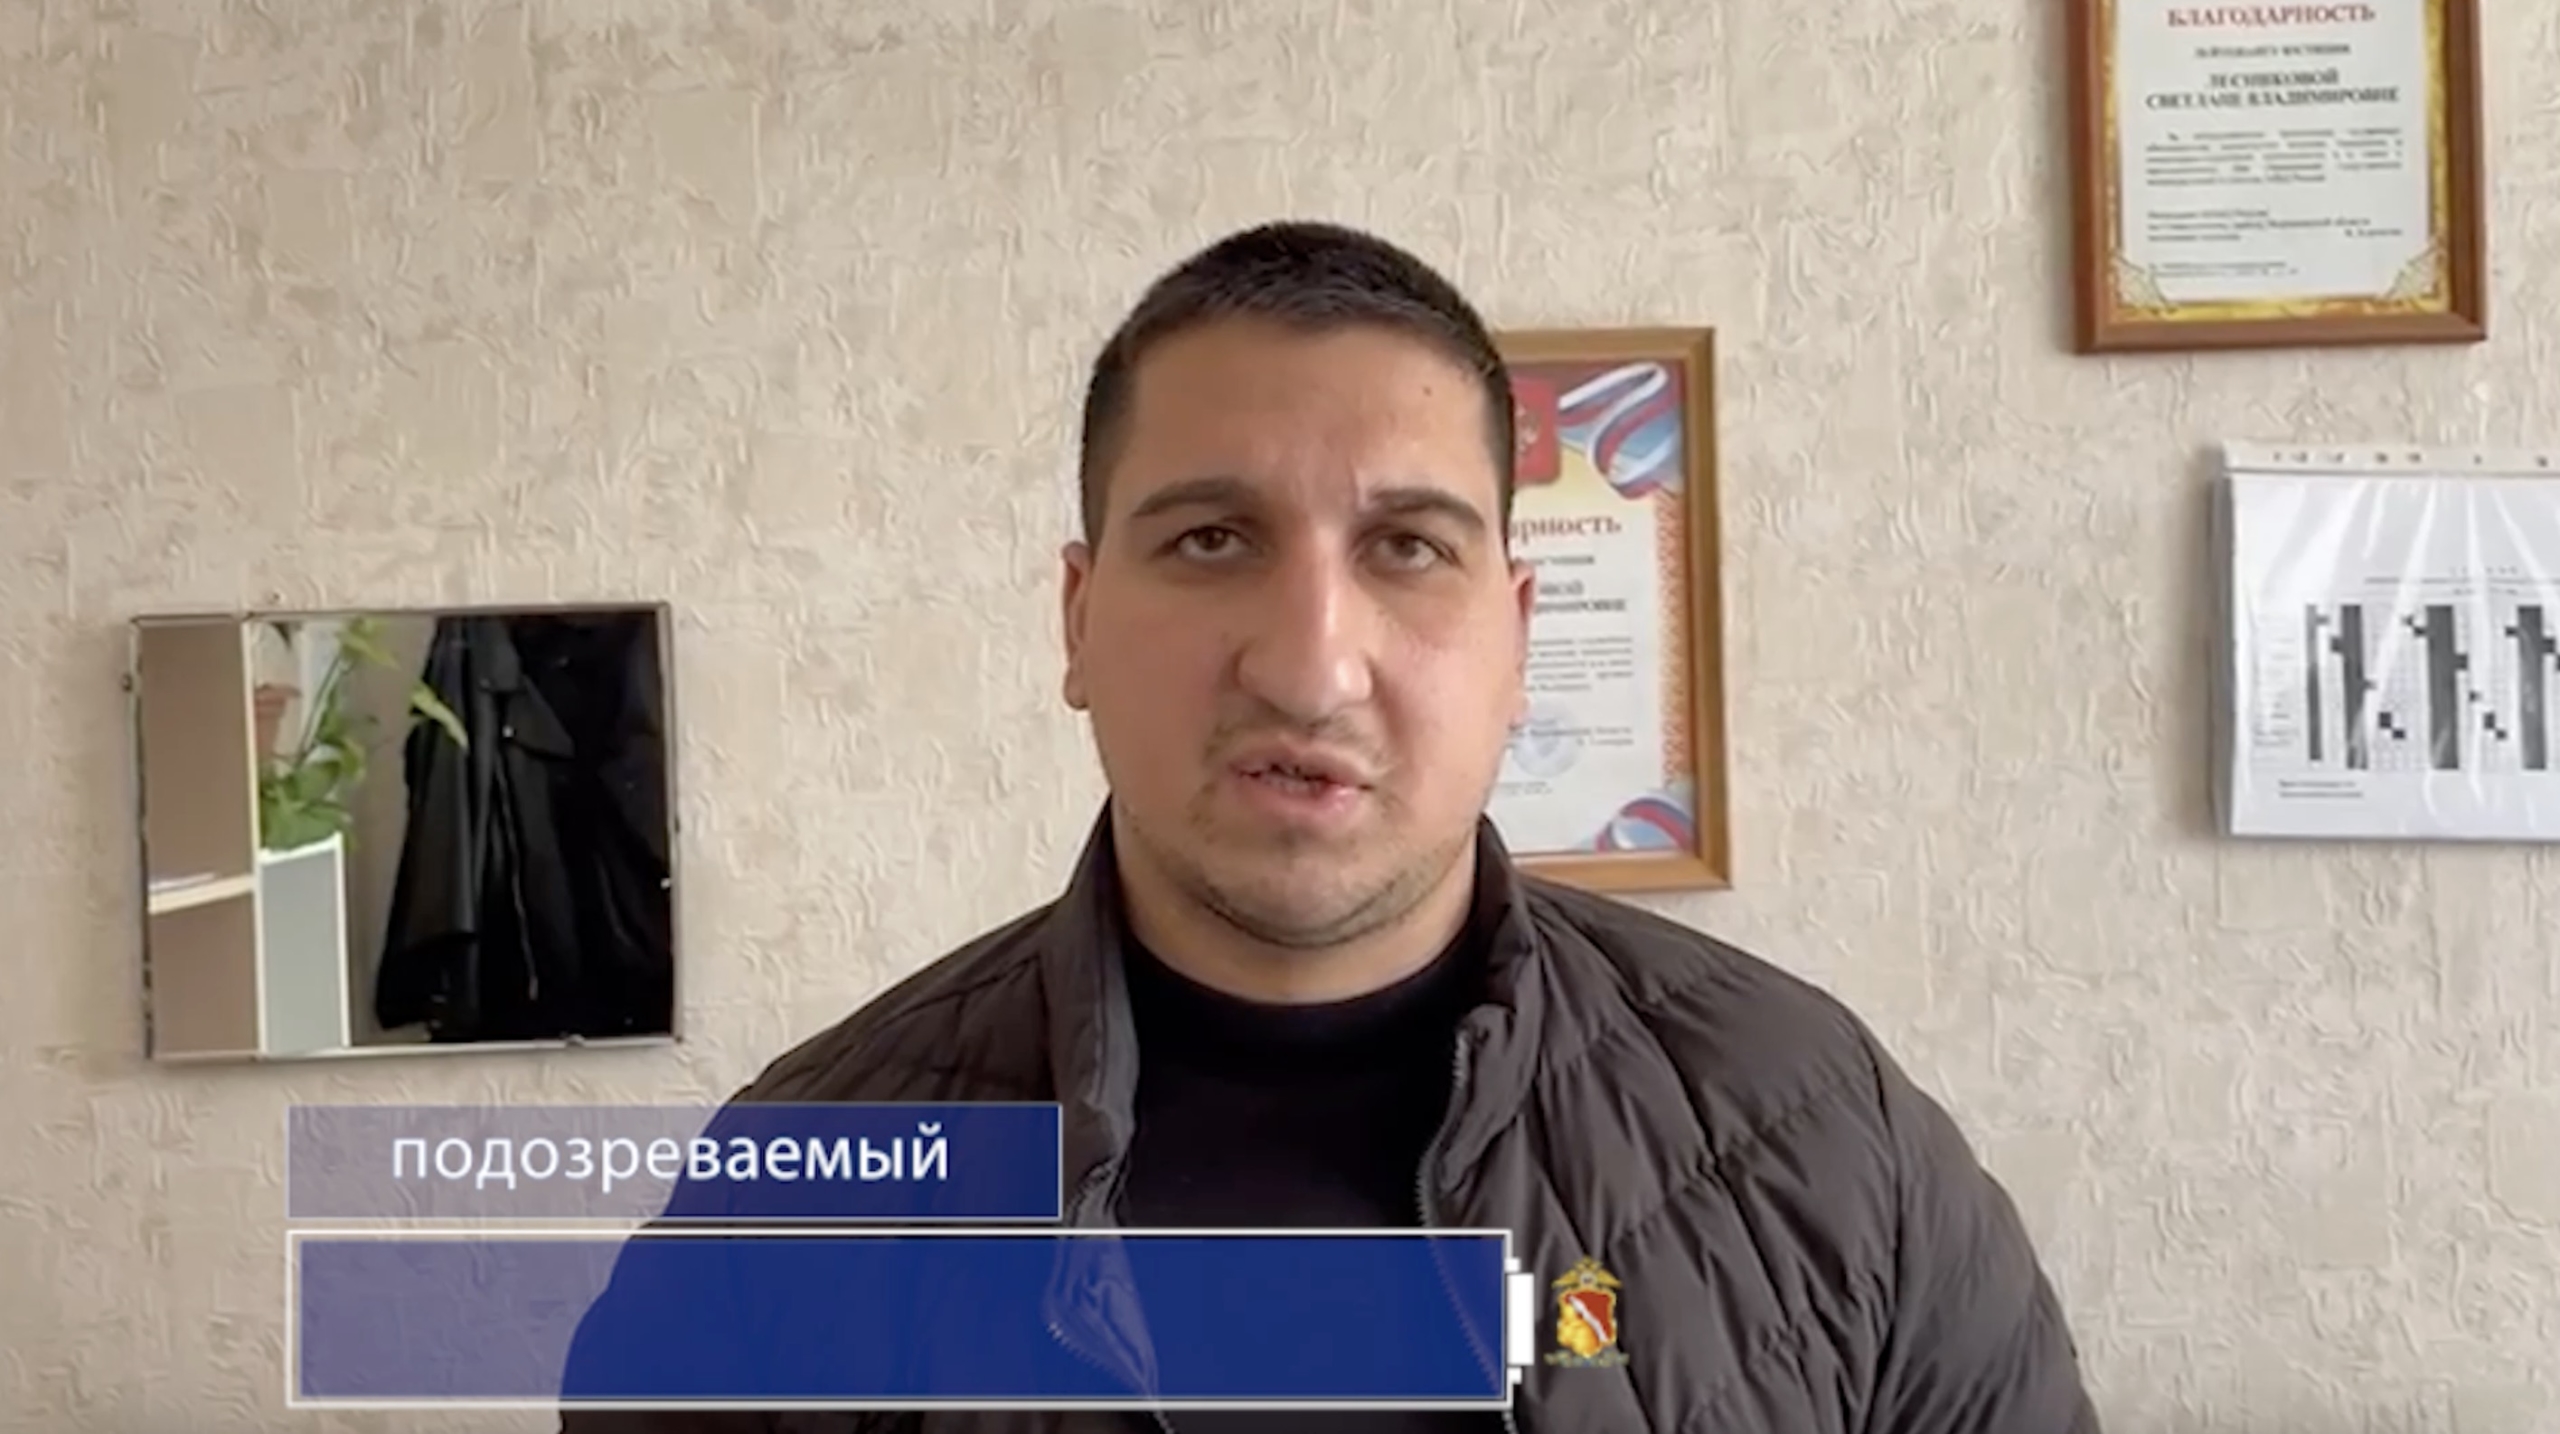 Опубликовано видео задержания воронежца, обманувшего пенсионерку на 212 тысяч рублей